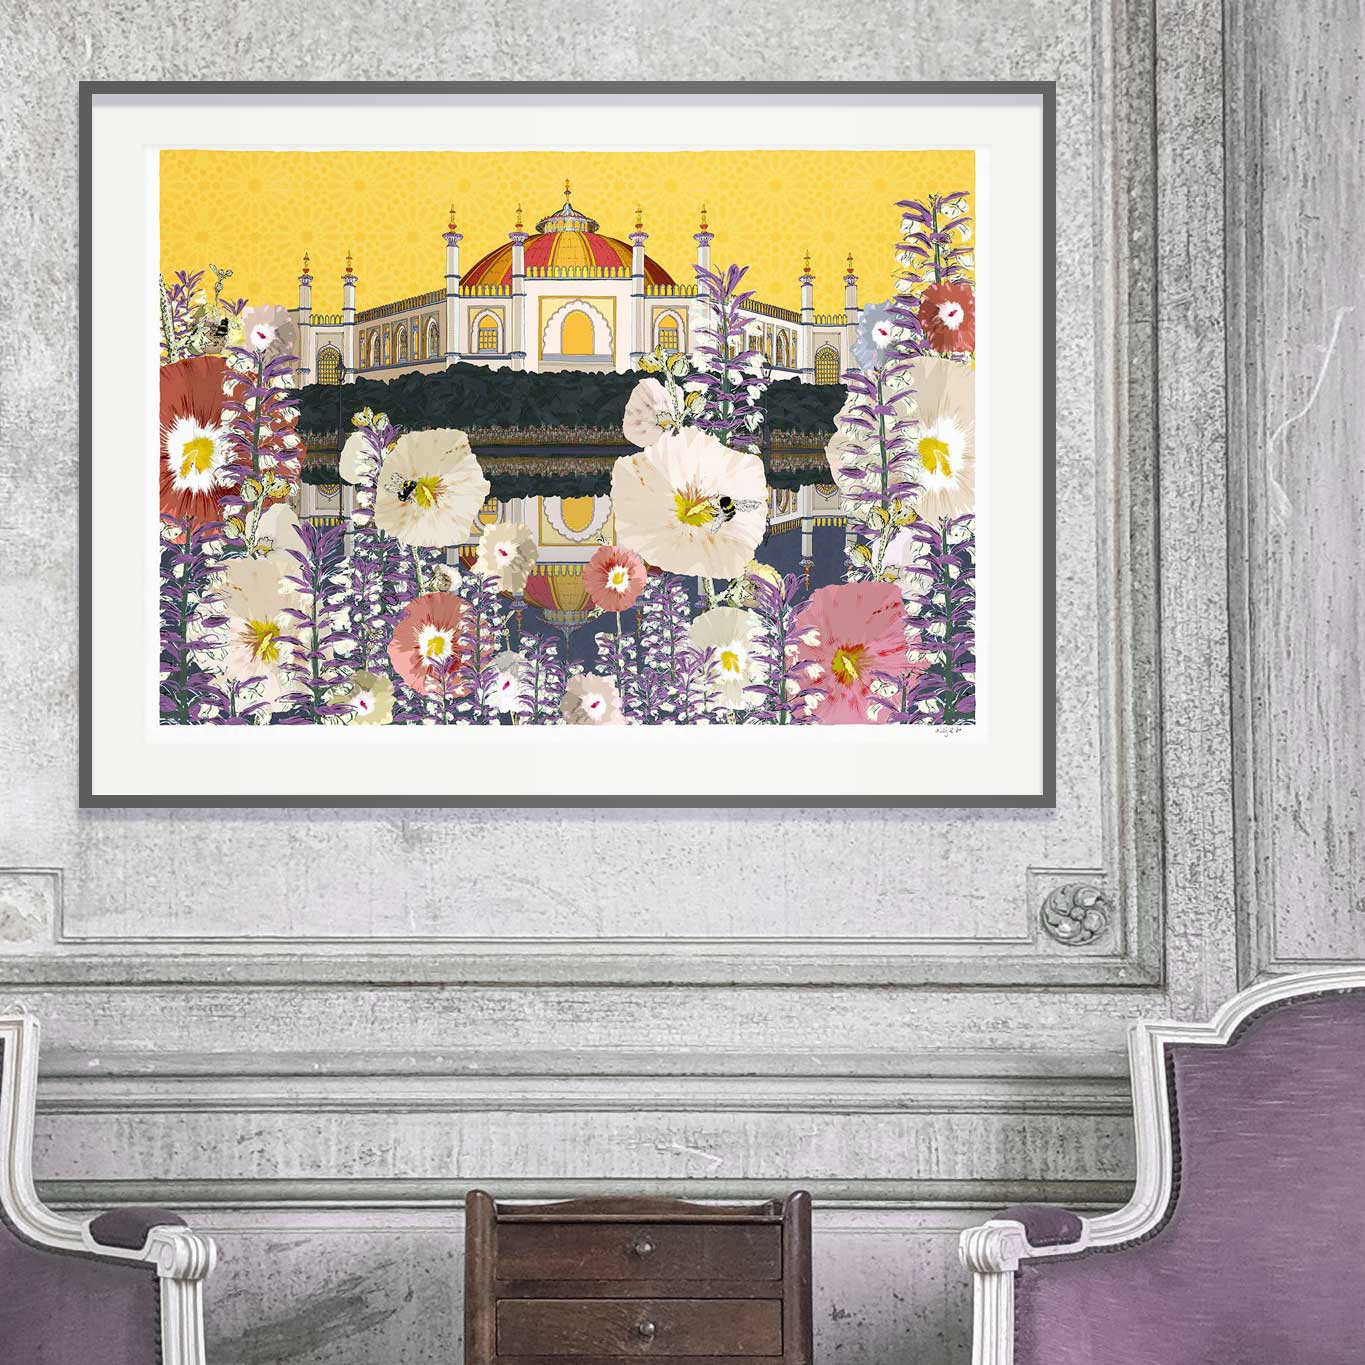 framed print by artist alej ez titled Hollyhocks Bumblebees Acanthus at Pavilion Gardens Lavender